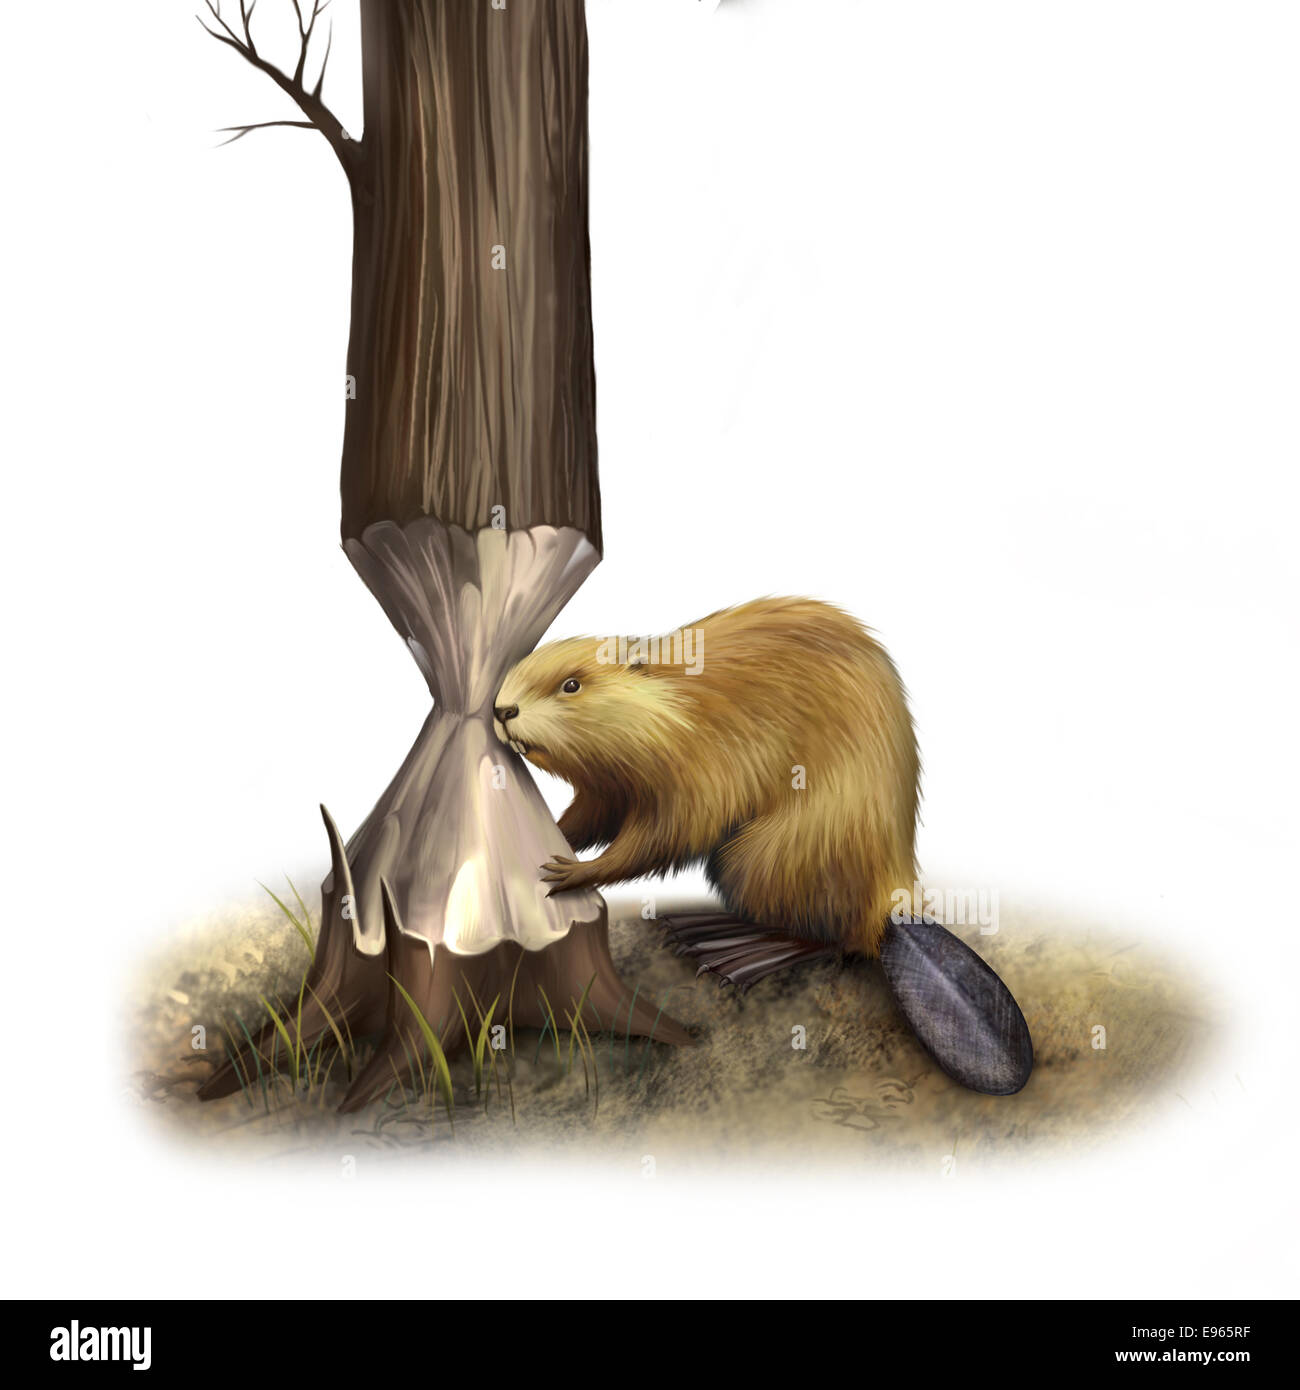 Le castor rongeant sur l'arbre. Castor du Canada, illustration isolé sur fond blanc Banque D'Images